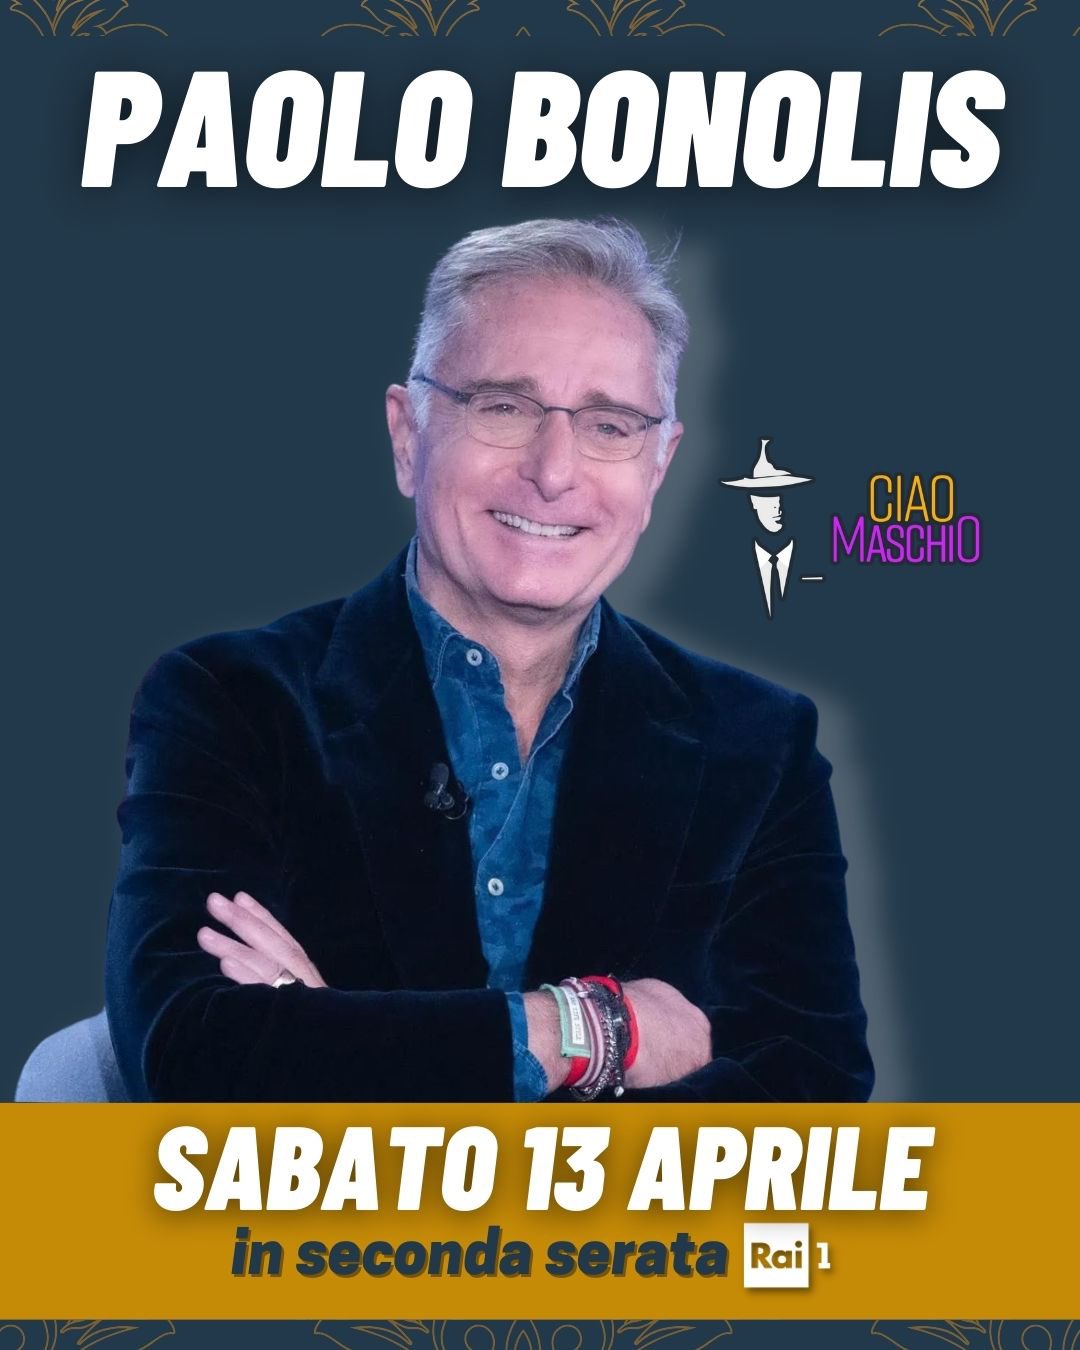 Paolo Bonolis Ciao Maschio